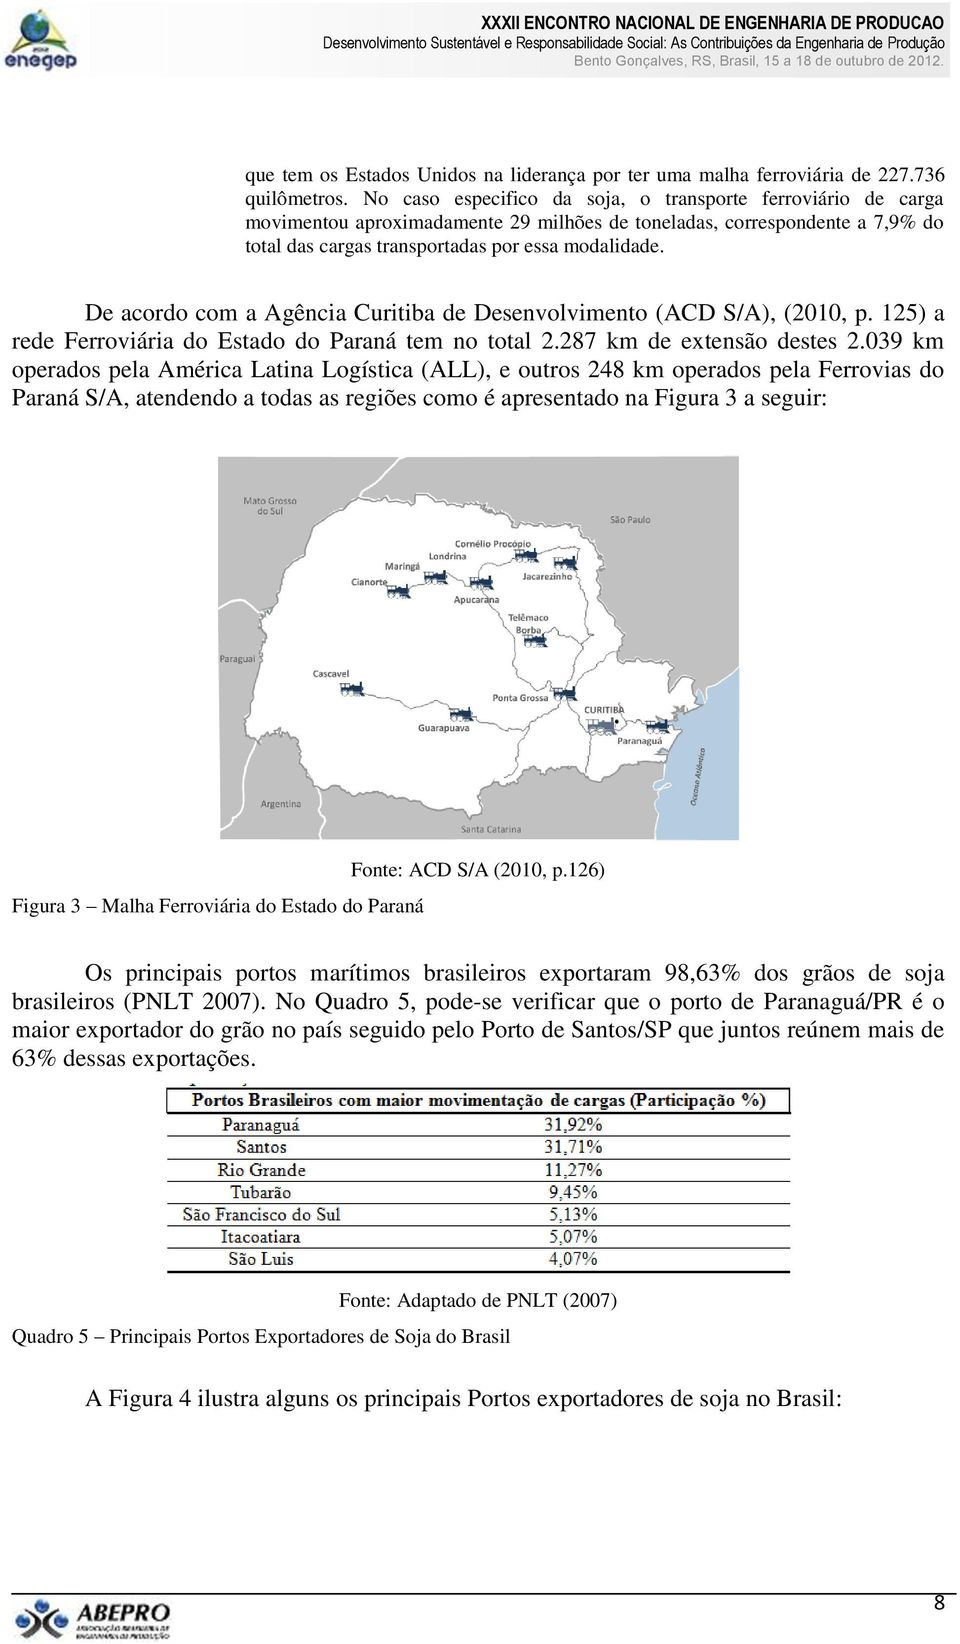 De acordo com a Agência Curitiba de Desenvolvimento (ACD S/A), (2010, p. 125) a rede Ferroviária do Estado do Paraná tem no total 2.287 km de extensão destes 2.